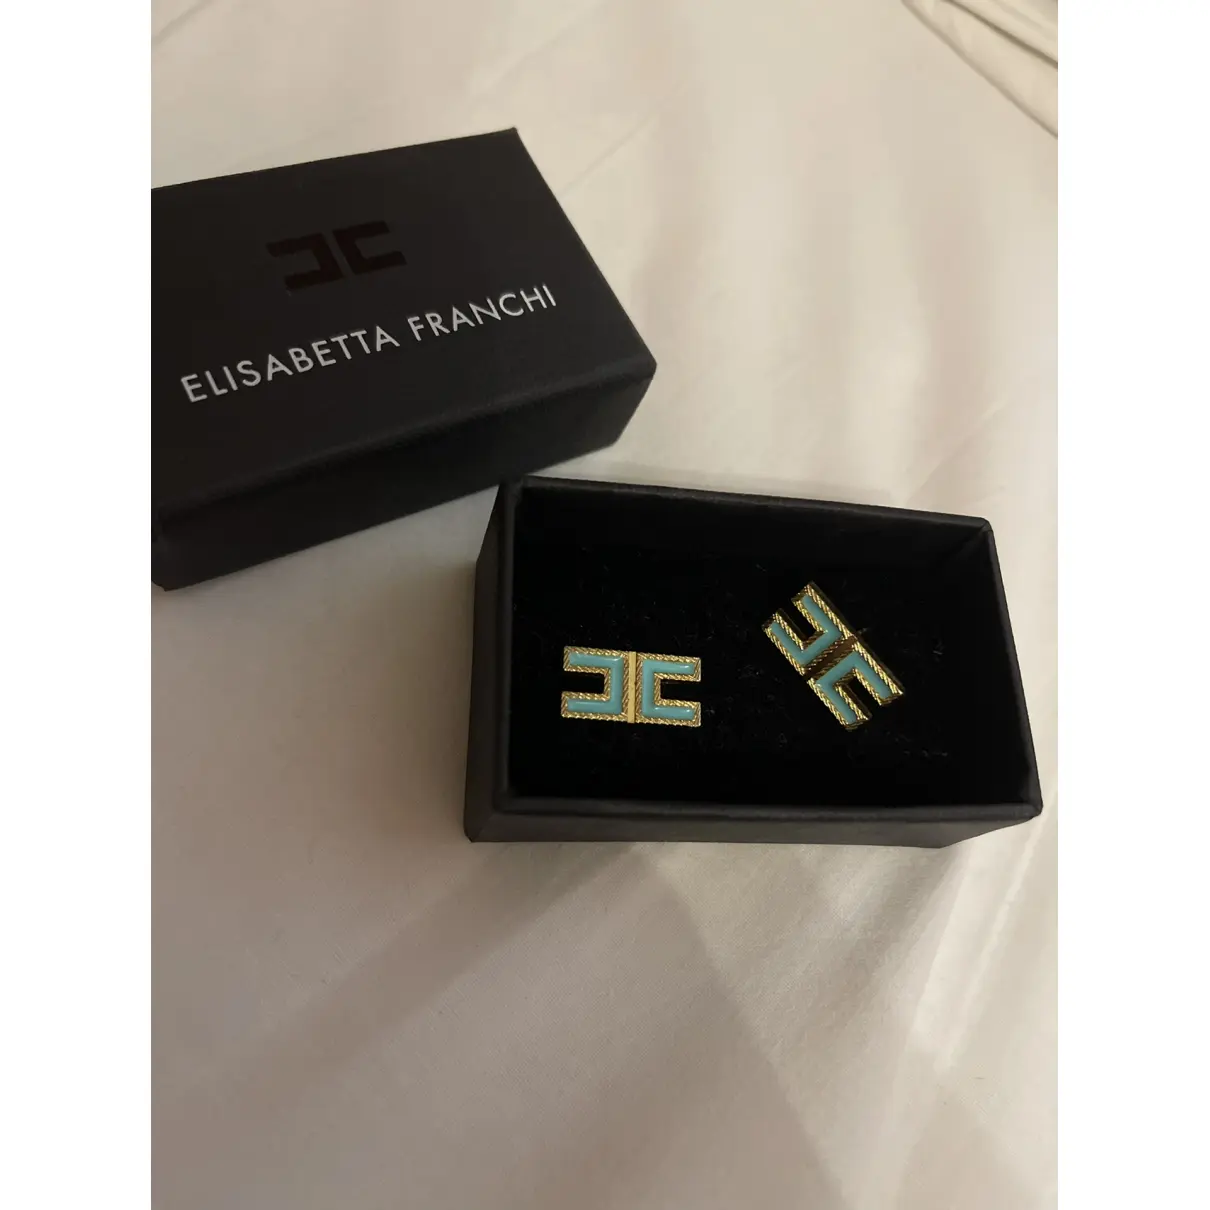 Buy Elisabetta Franchi Earrings online